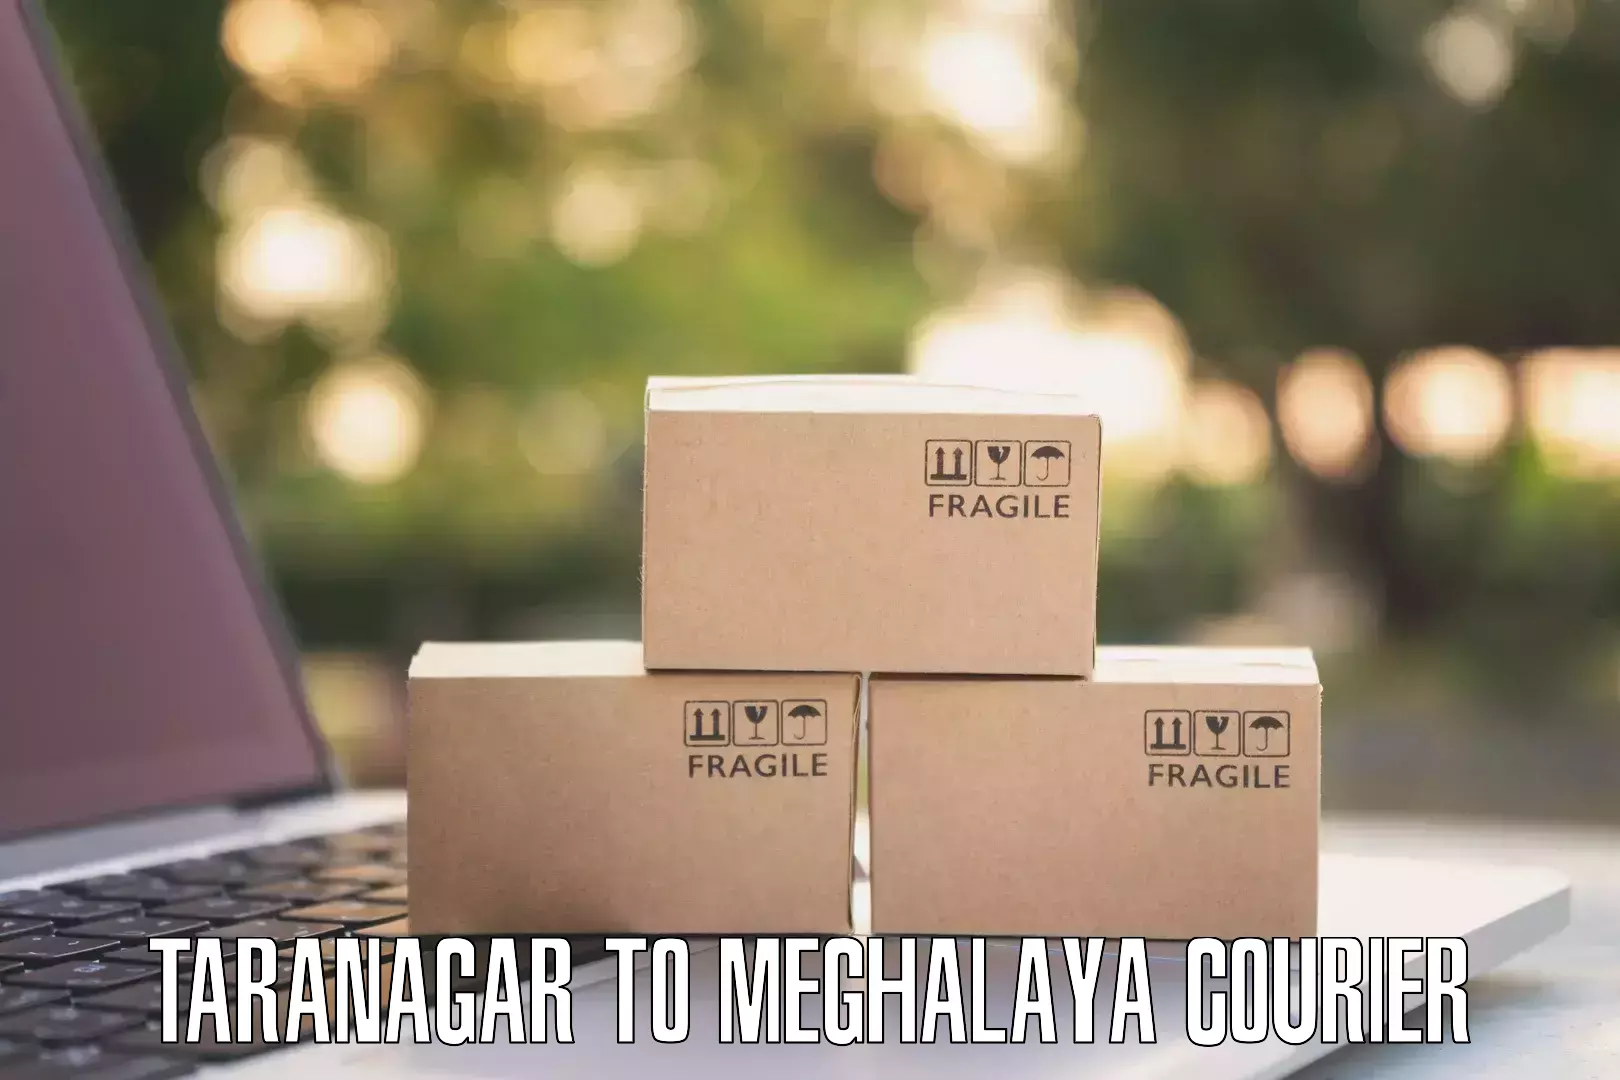 Bulk shipment Taranagar to Meghalaya